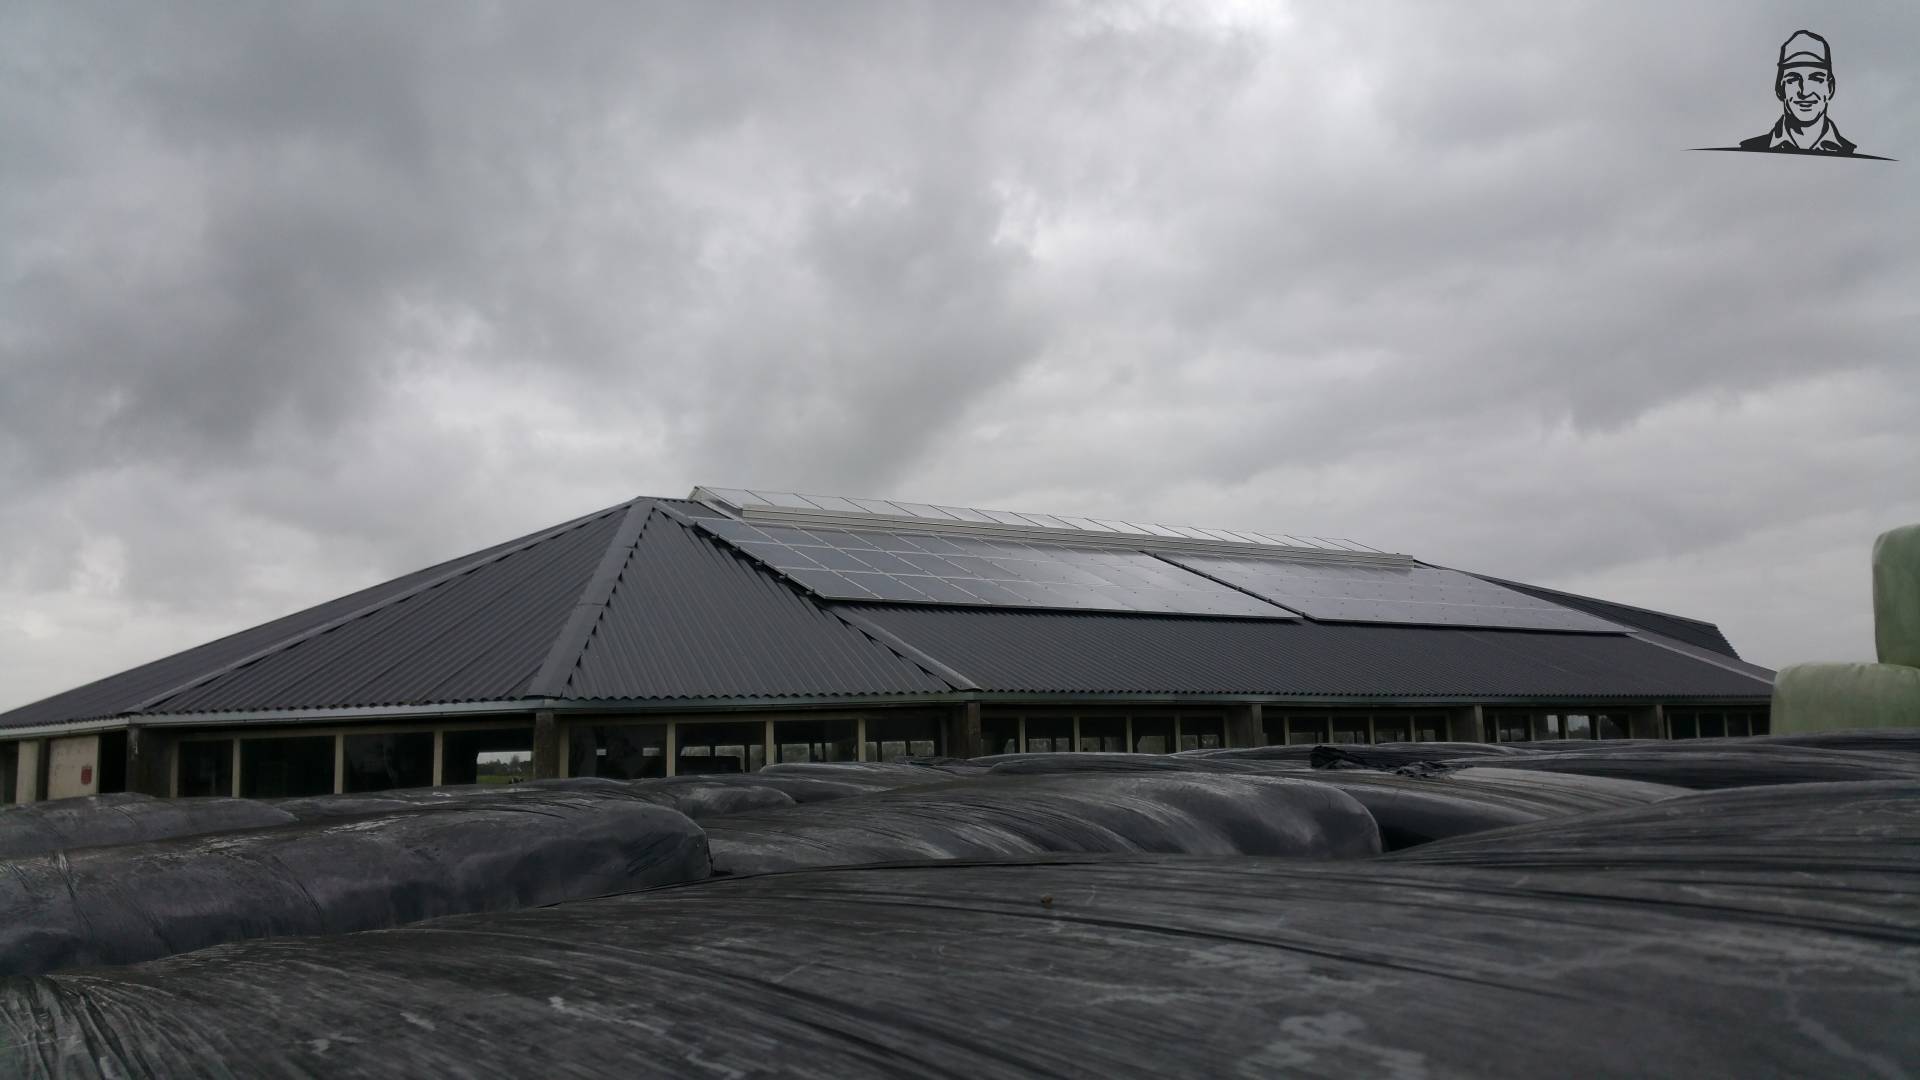 Splinternieuw gerenoveerd dak, geïsoleerde platen met zonnepanelen erboven